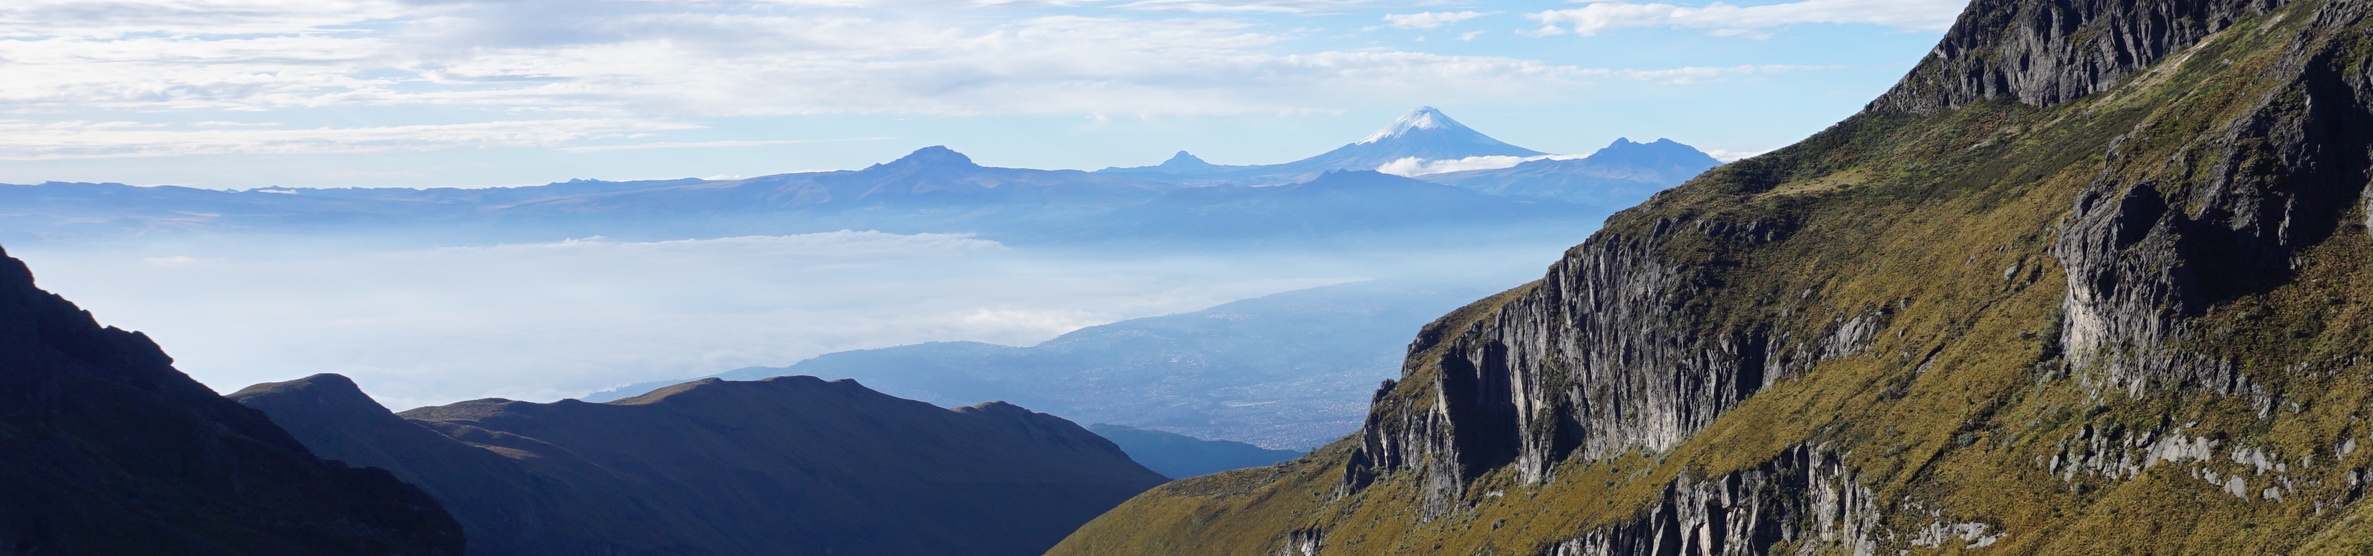 Una fotografía corta y ancha mirando hacia el horizonte desde un punto de vista elevado en las laderas del volcán Pichincha. En la distancia, se ve el cono nevado del volcán Antisana, y en primer plano hay acantilados cubiertos de hierba.